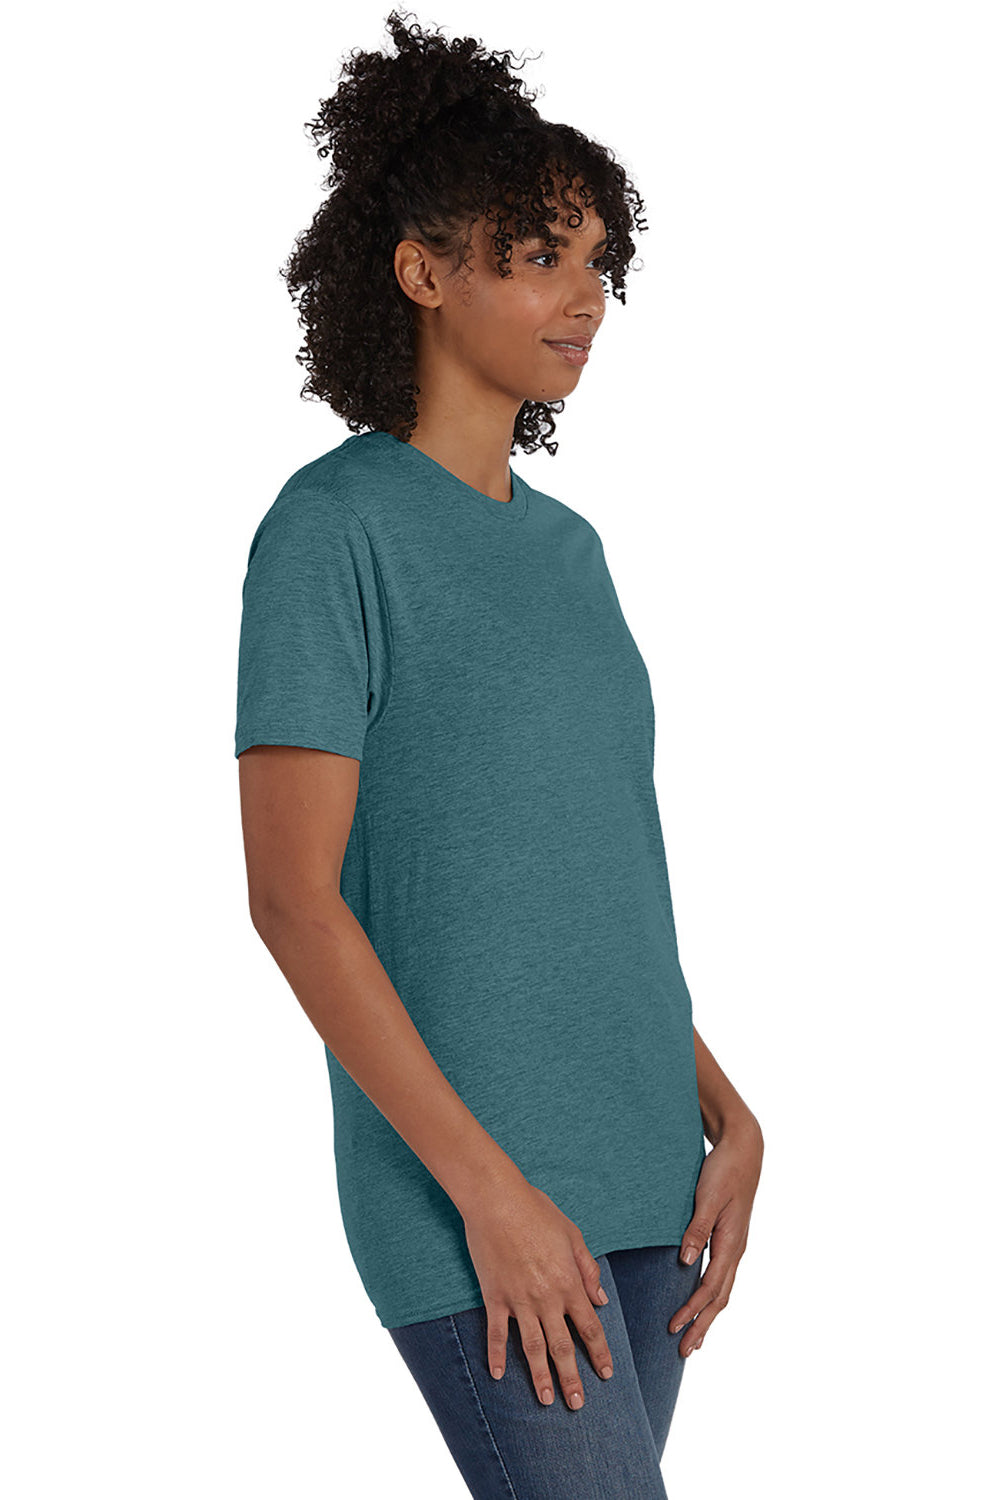 Hanes 4980 Mens Nano-T Short Sleeve Crewneck T-Shirt Heather Cactus Green 3Q